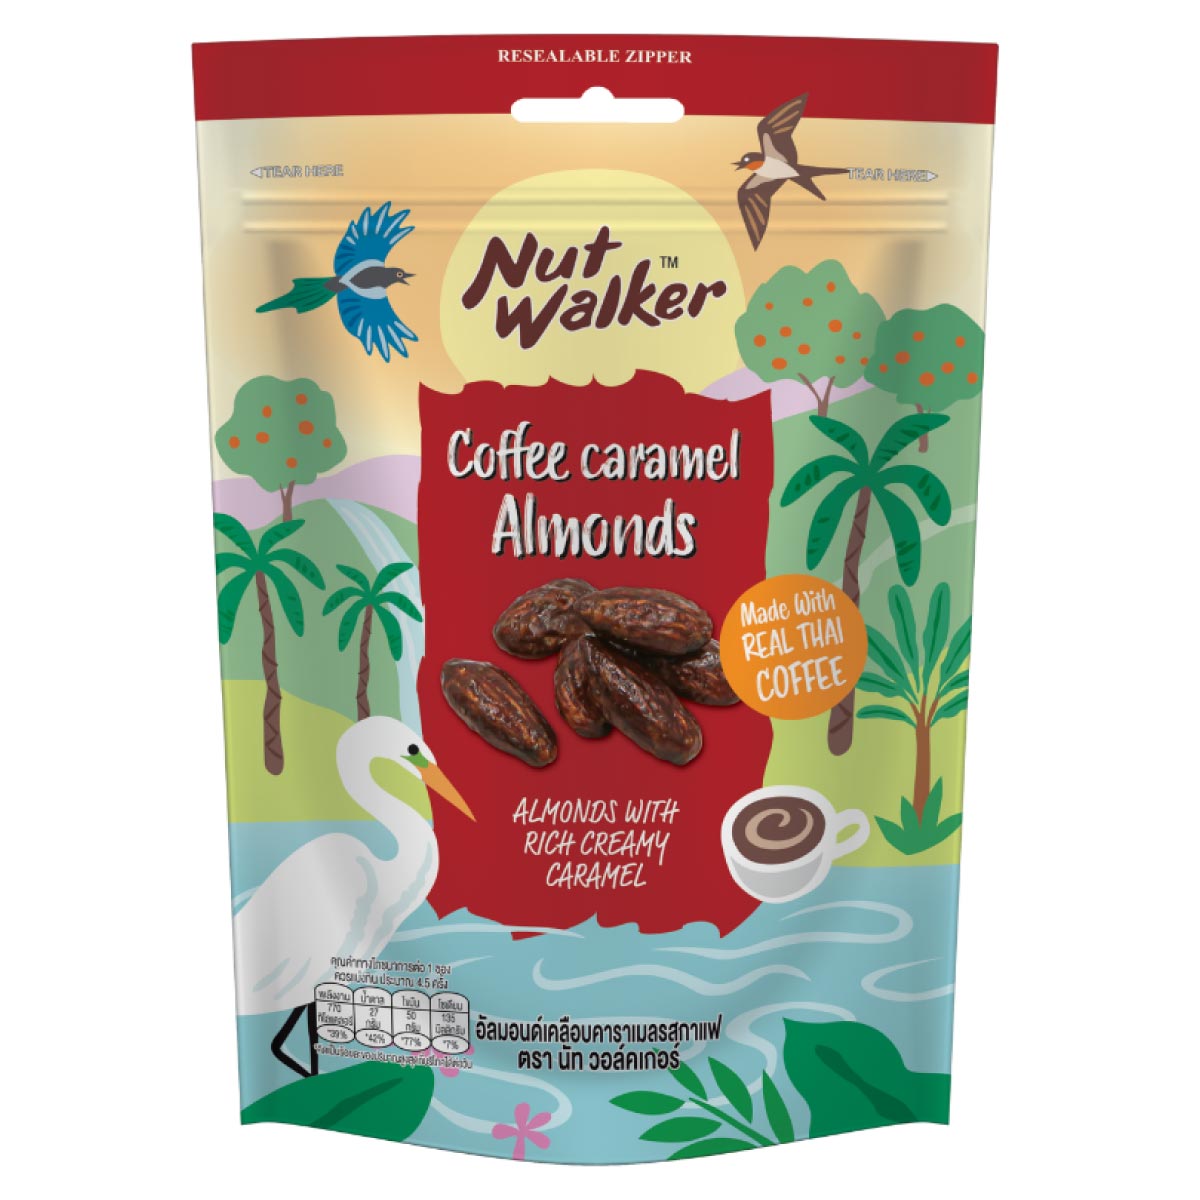 NUTW-almonds-with-coffee-caramel-120g-1200x1200